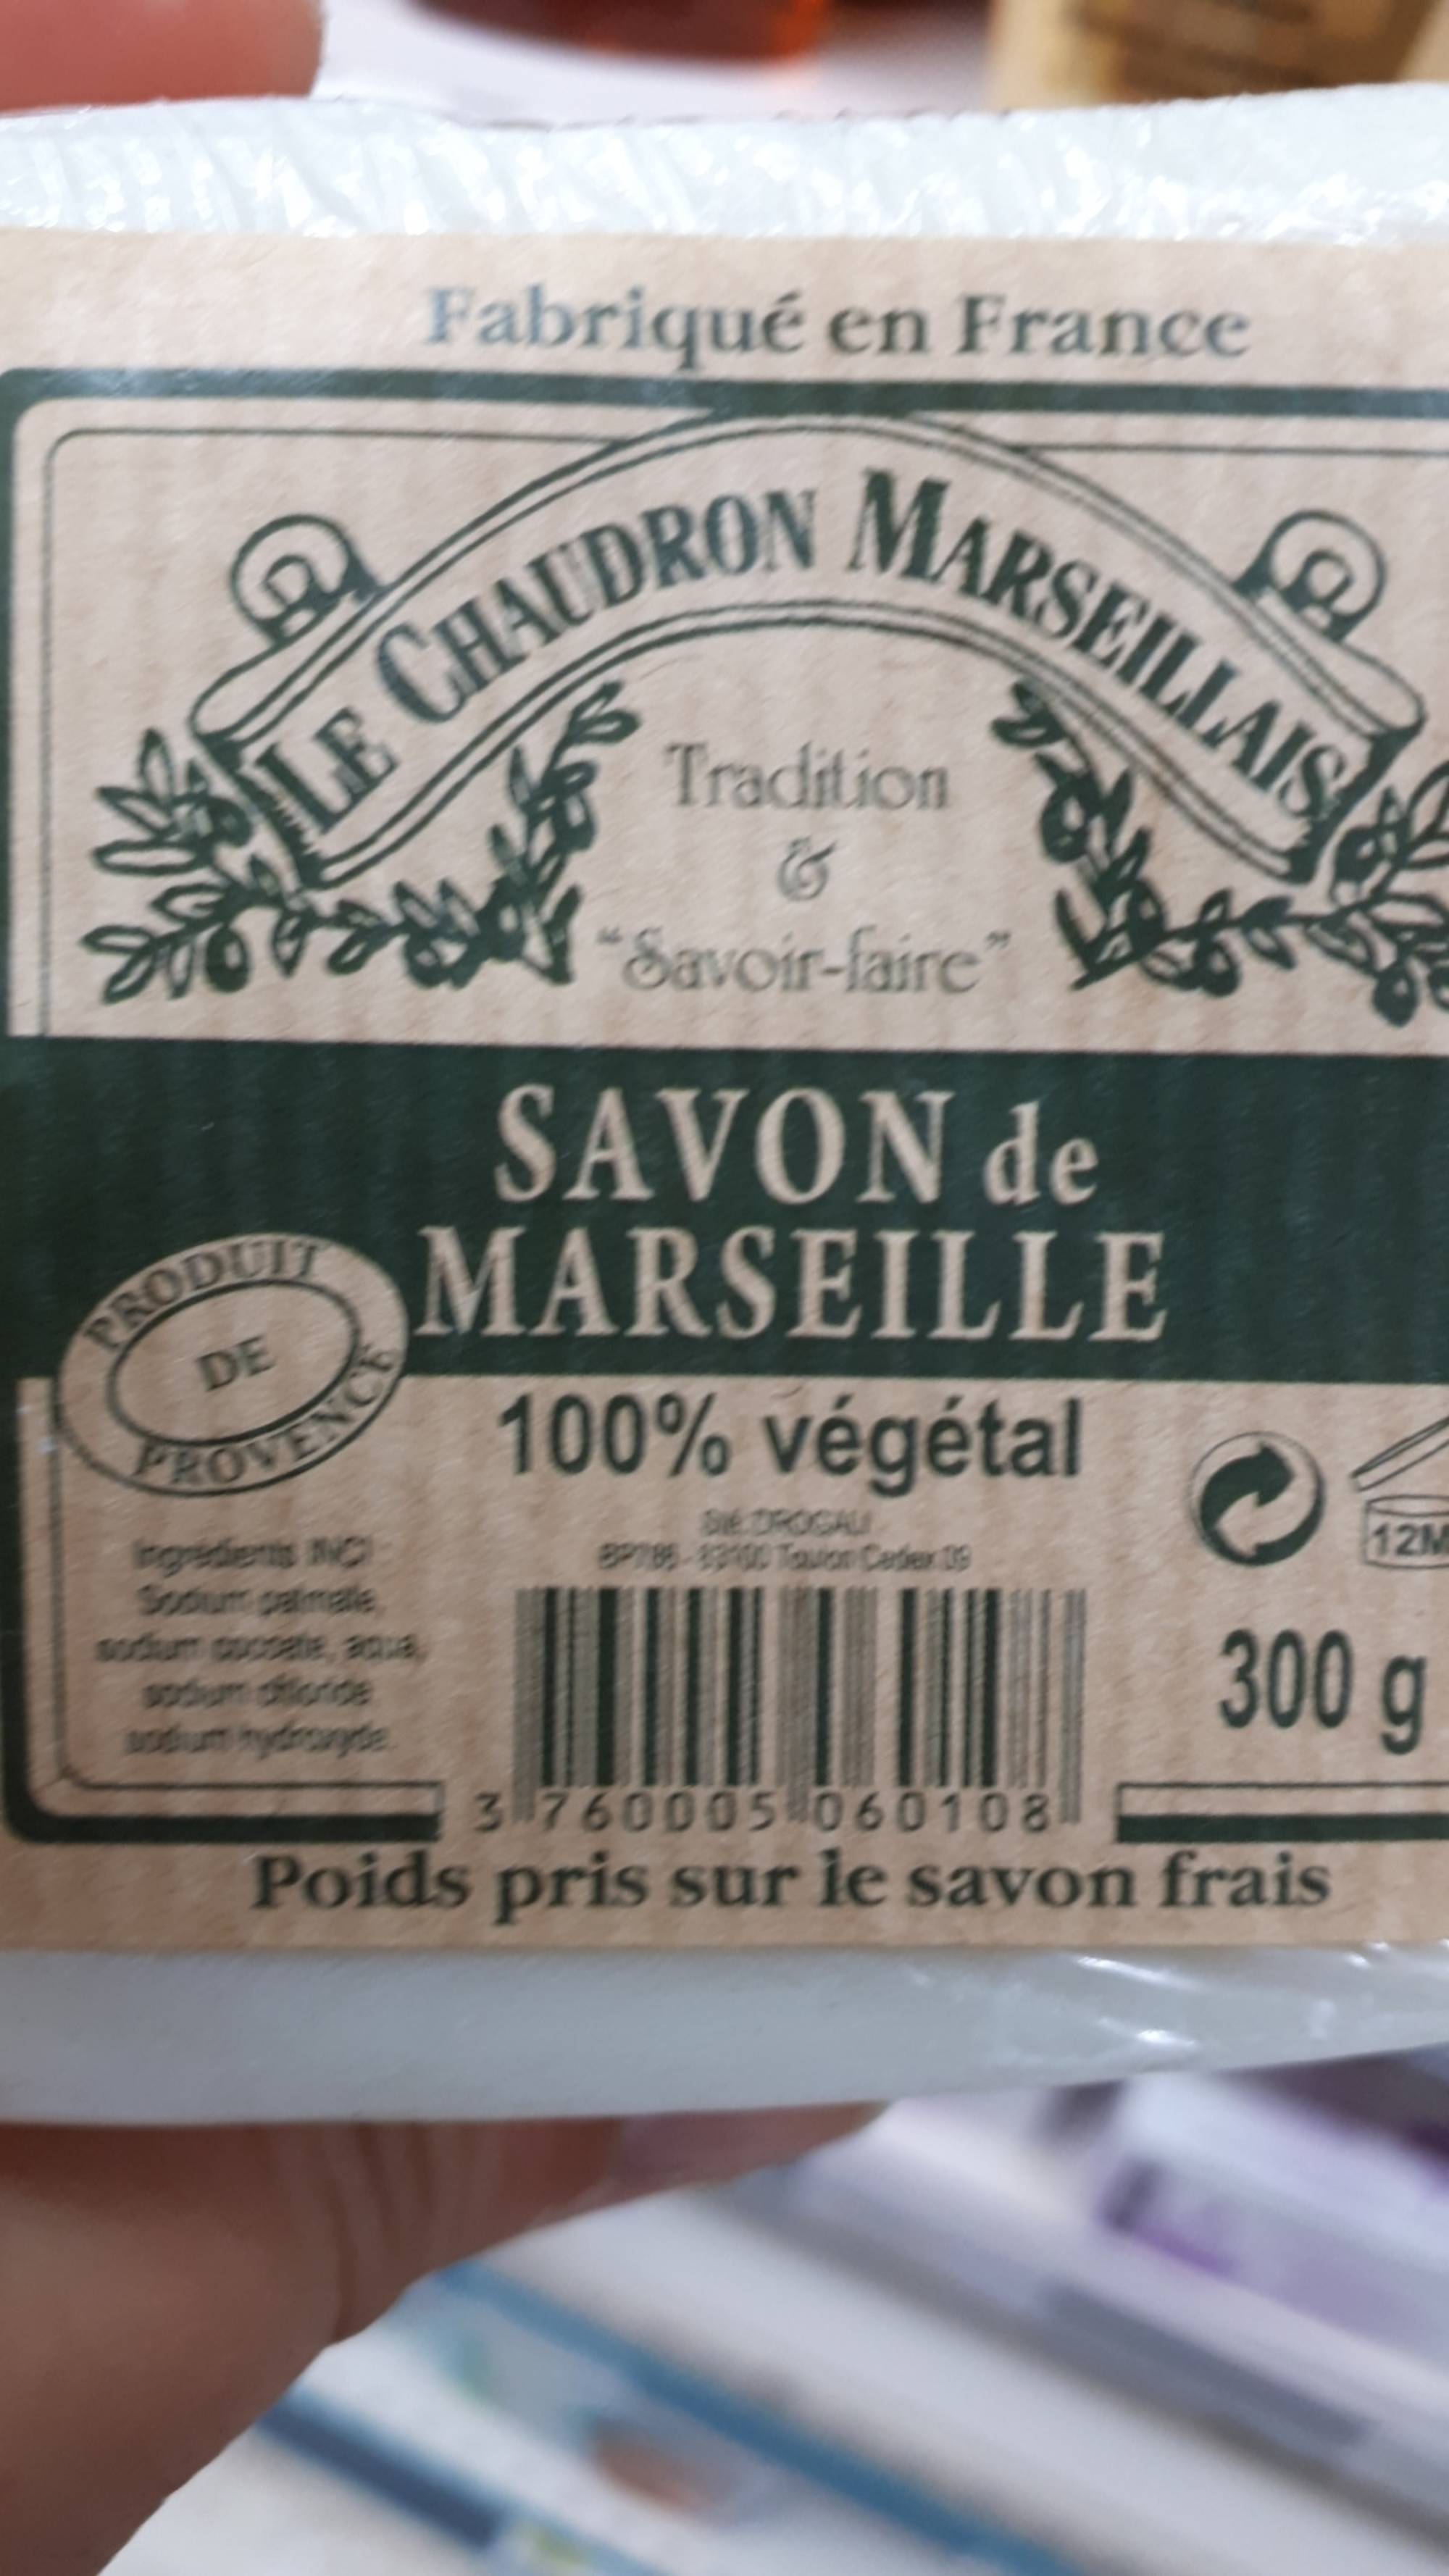 LE CHAUDRON MARSEILLAIS - Savon de Marseille